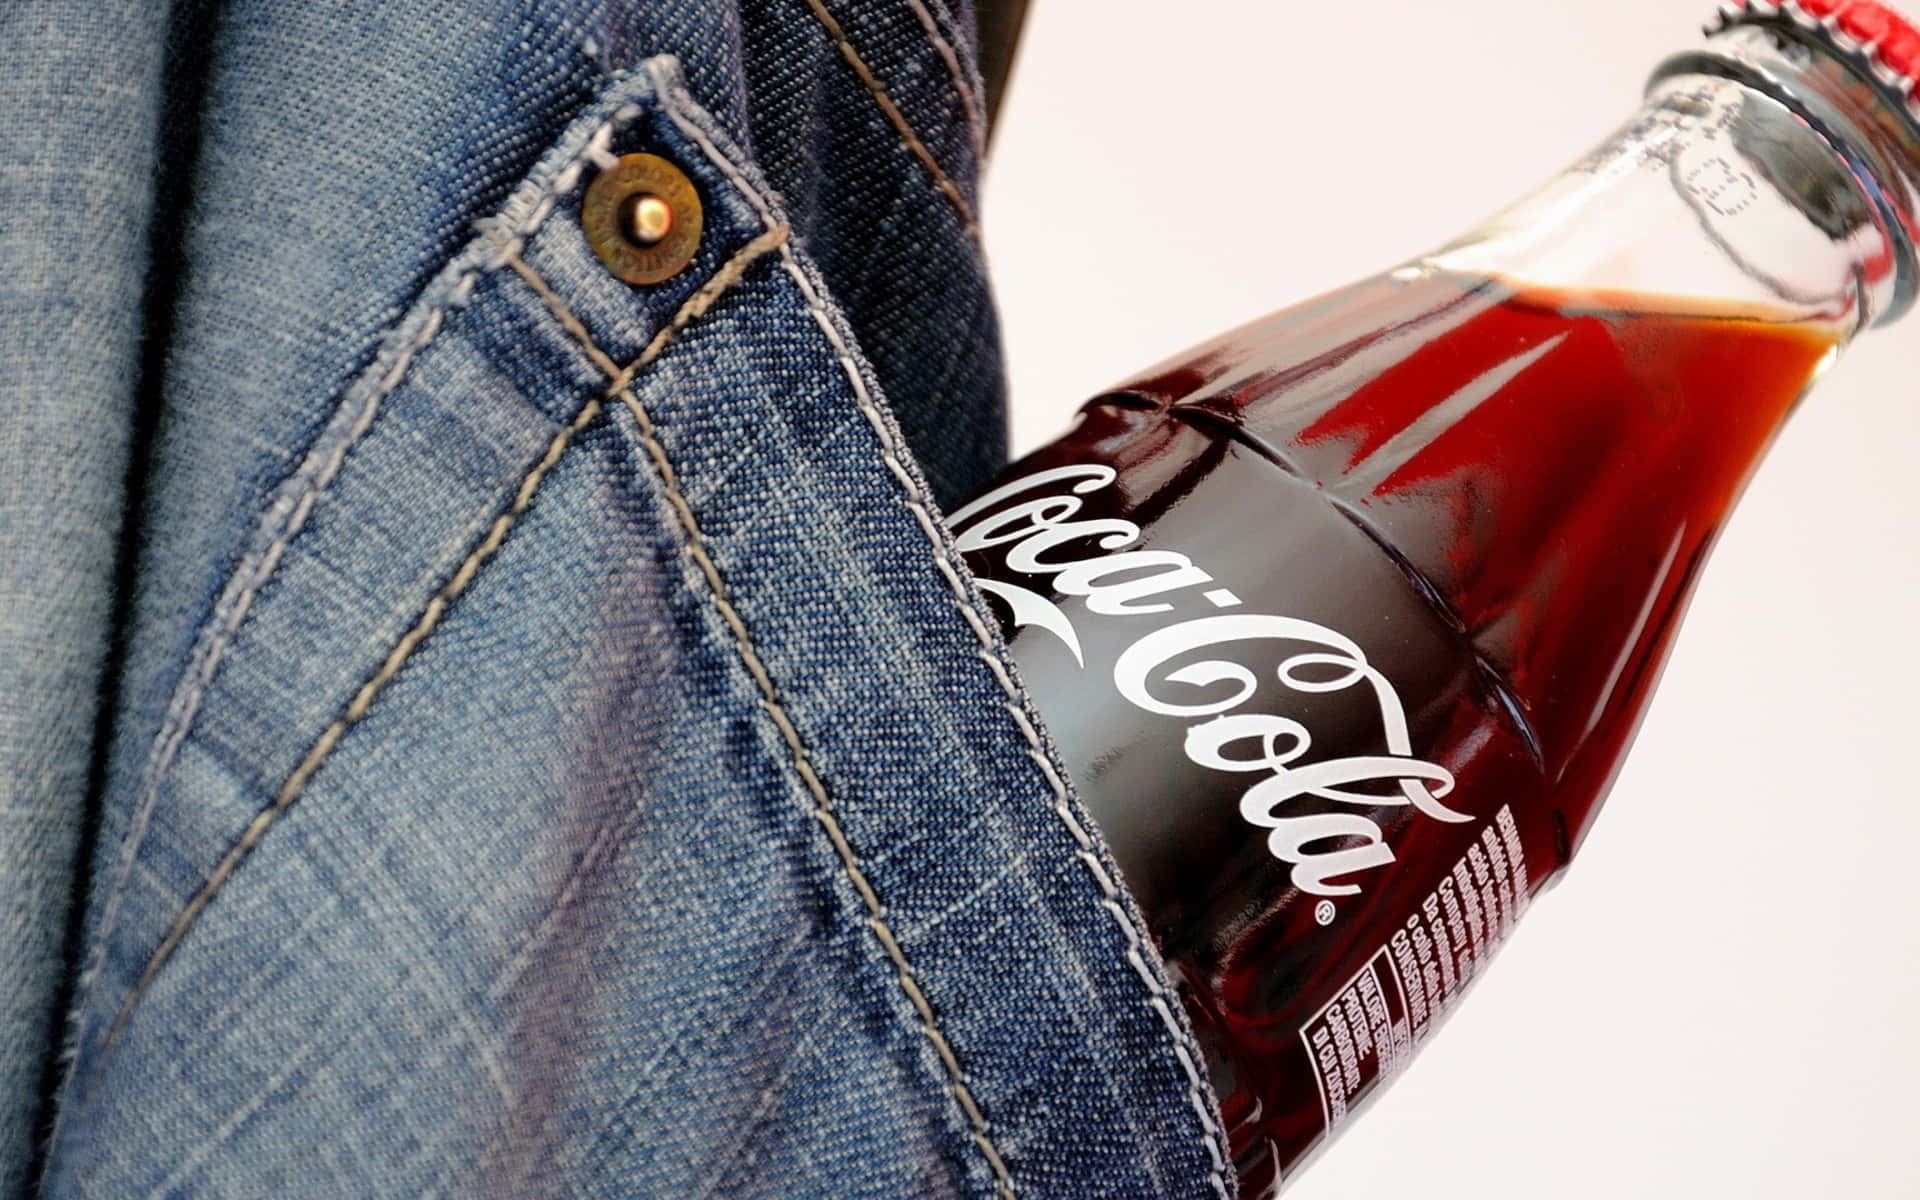 Unabotella De Coca Cola En Un Bolsillo De Unos Jeans